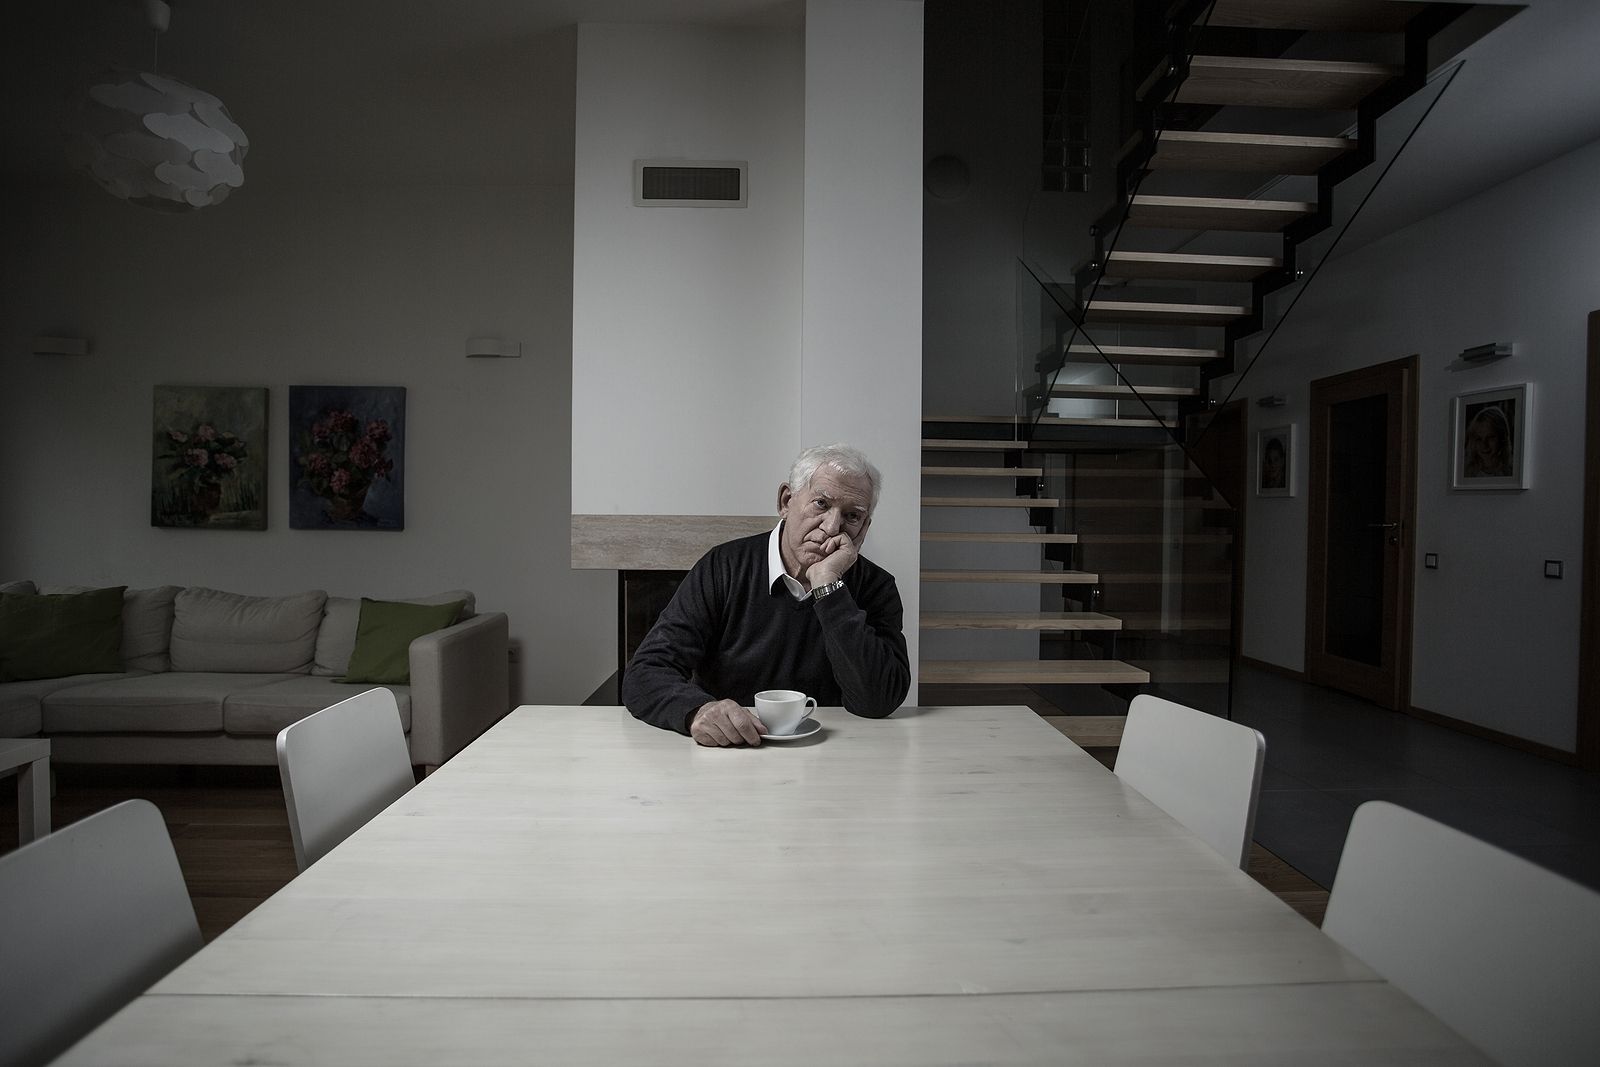 La soledad crónica aumenta el riesgo de ictus en personas mayores